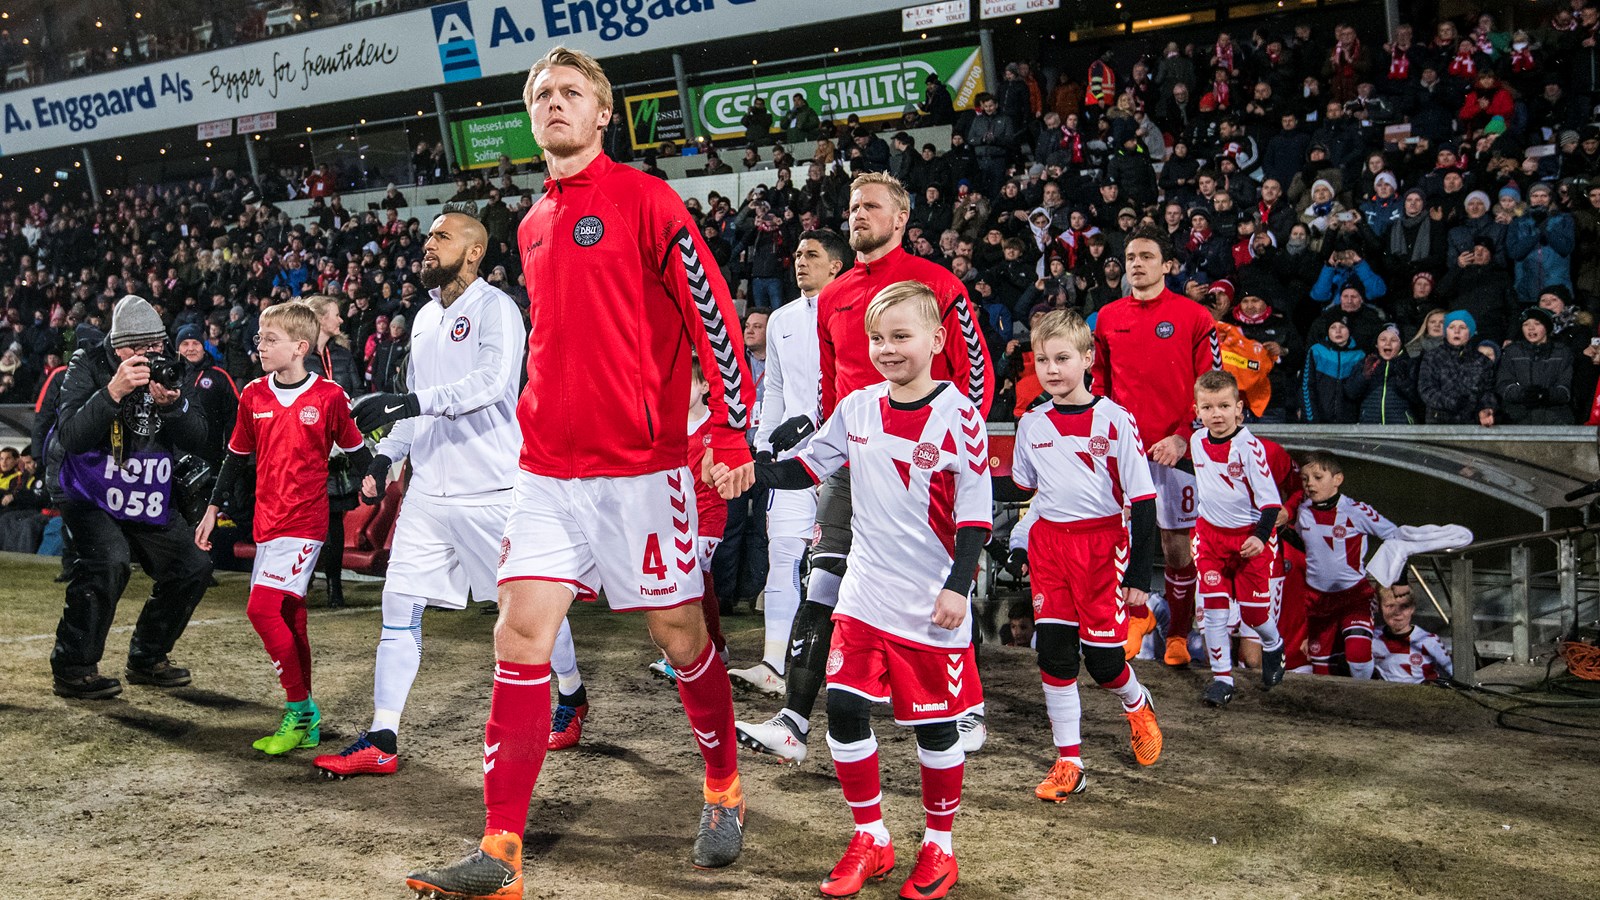 Aalborg og DBU udvider aftale om landskampe og fodbold-sundhed